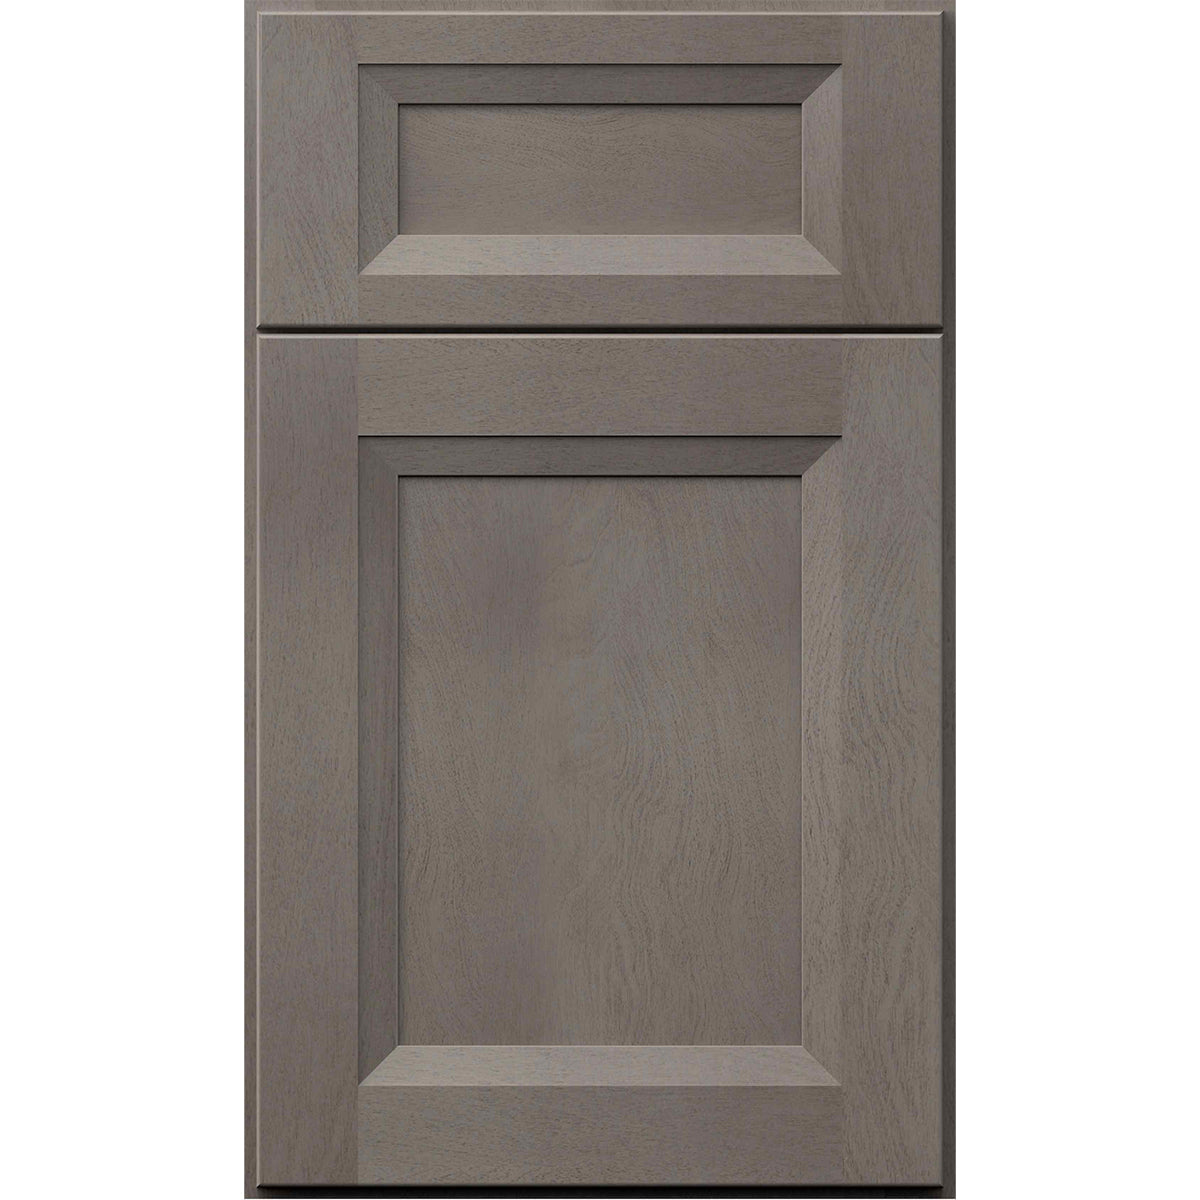 Fabuwood Allure Onyx Horizon Recessed Panel Grey Door Sample